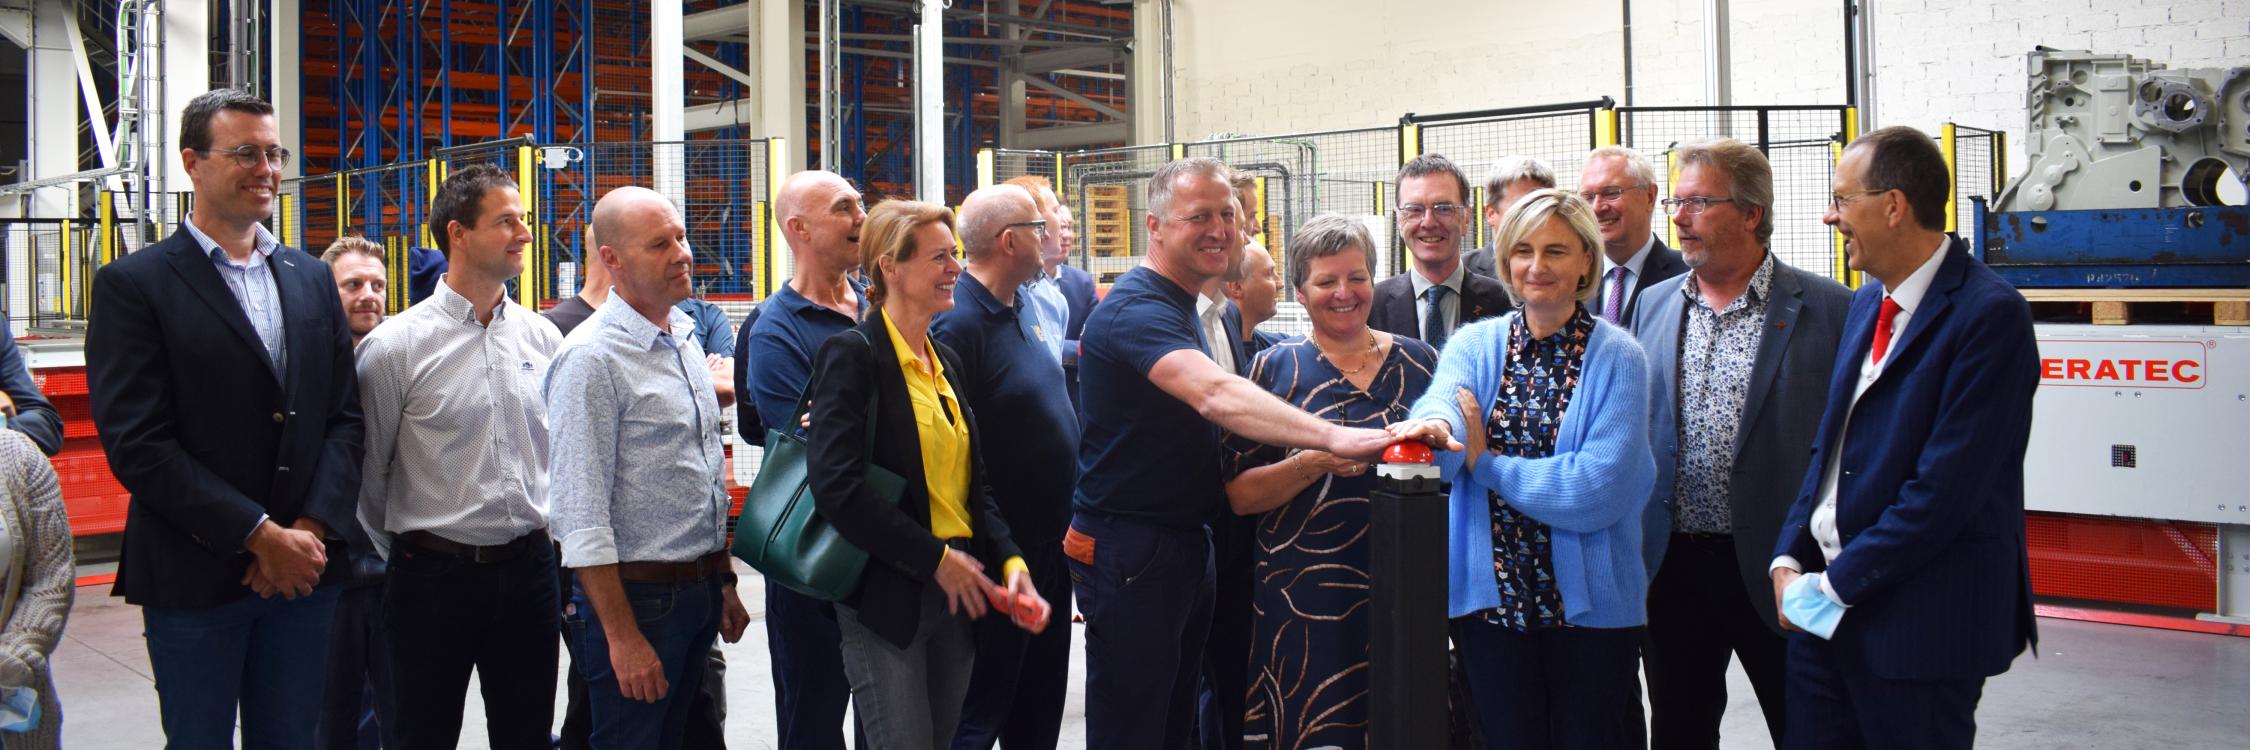 Vlaams minister Hilde Crevits opent hoogbouwmagazijn Proferro